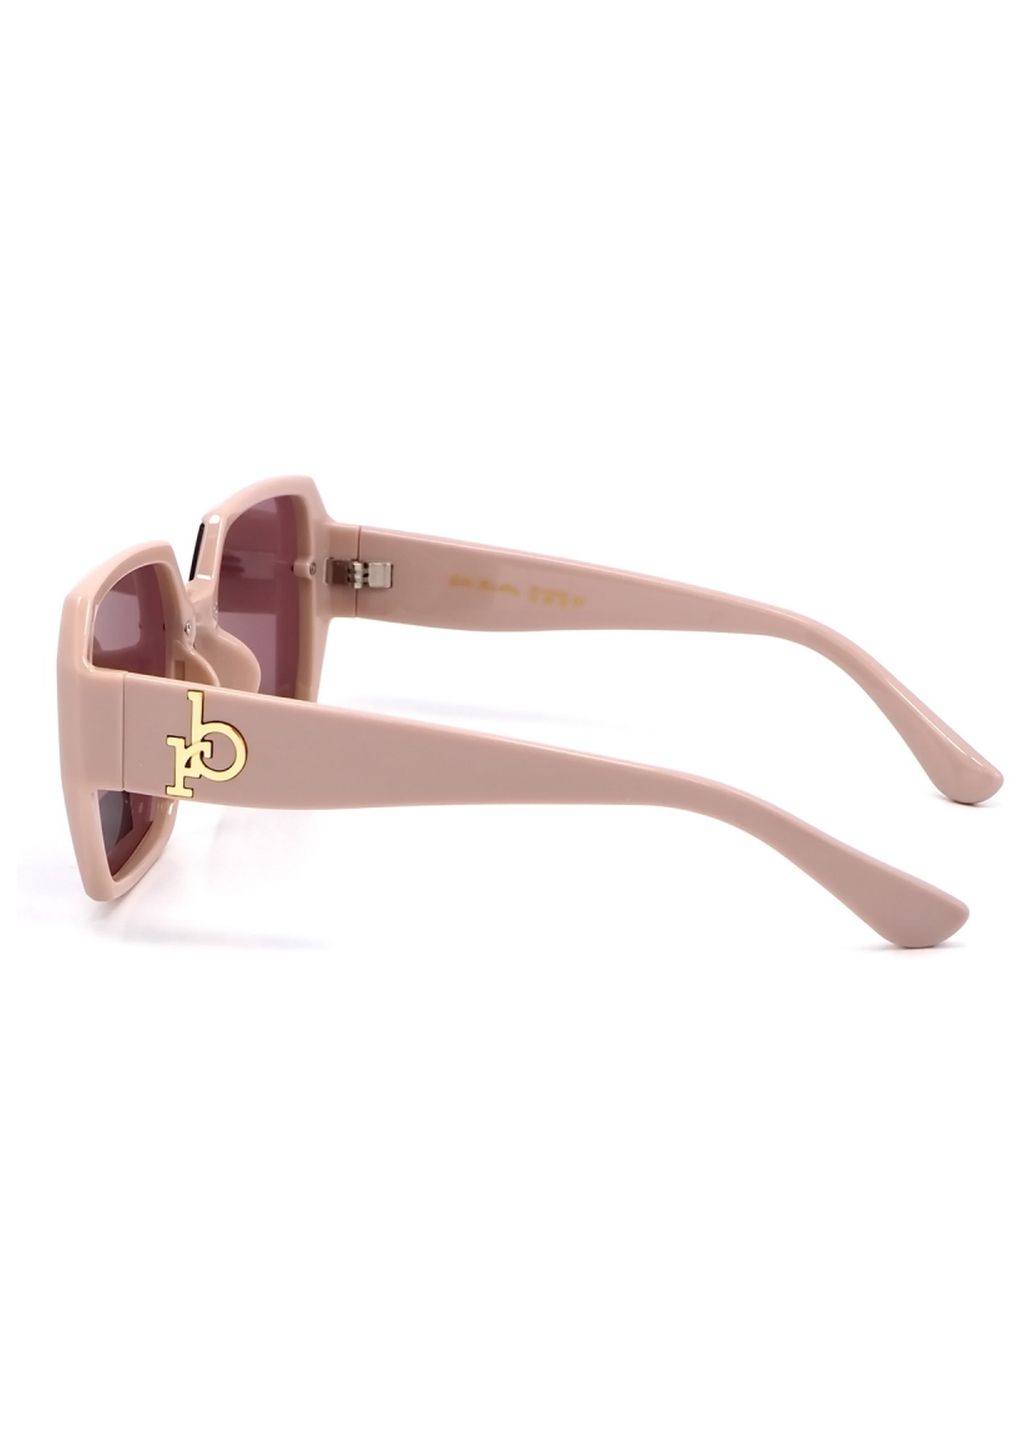 Купить Женские солнцезащитные очки Rita Bradley с поляризацией RB722 112035 в интернет-магазине